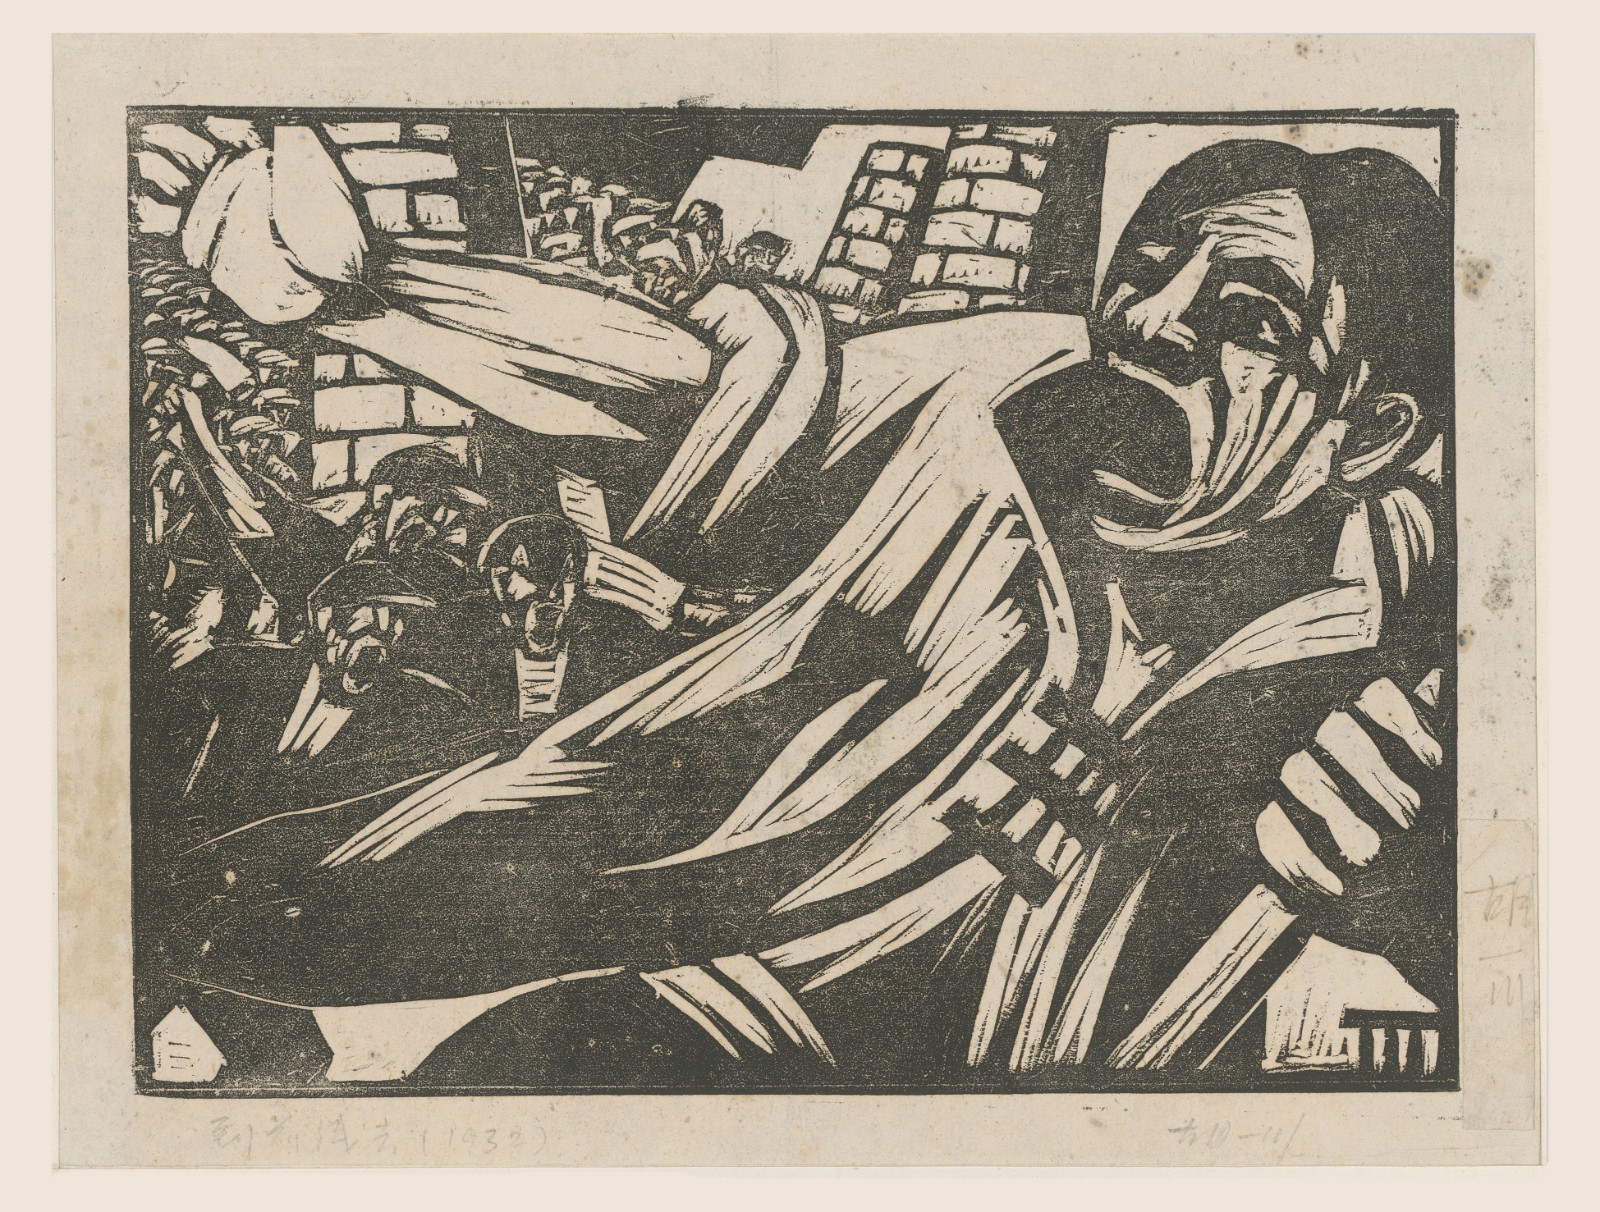 10《到前线去》，胡一川，1932年，上海，黑白木刻，25X33cm，中国美术馆藏.jpg